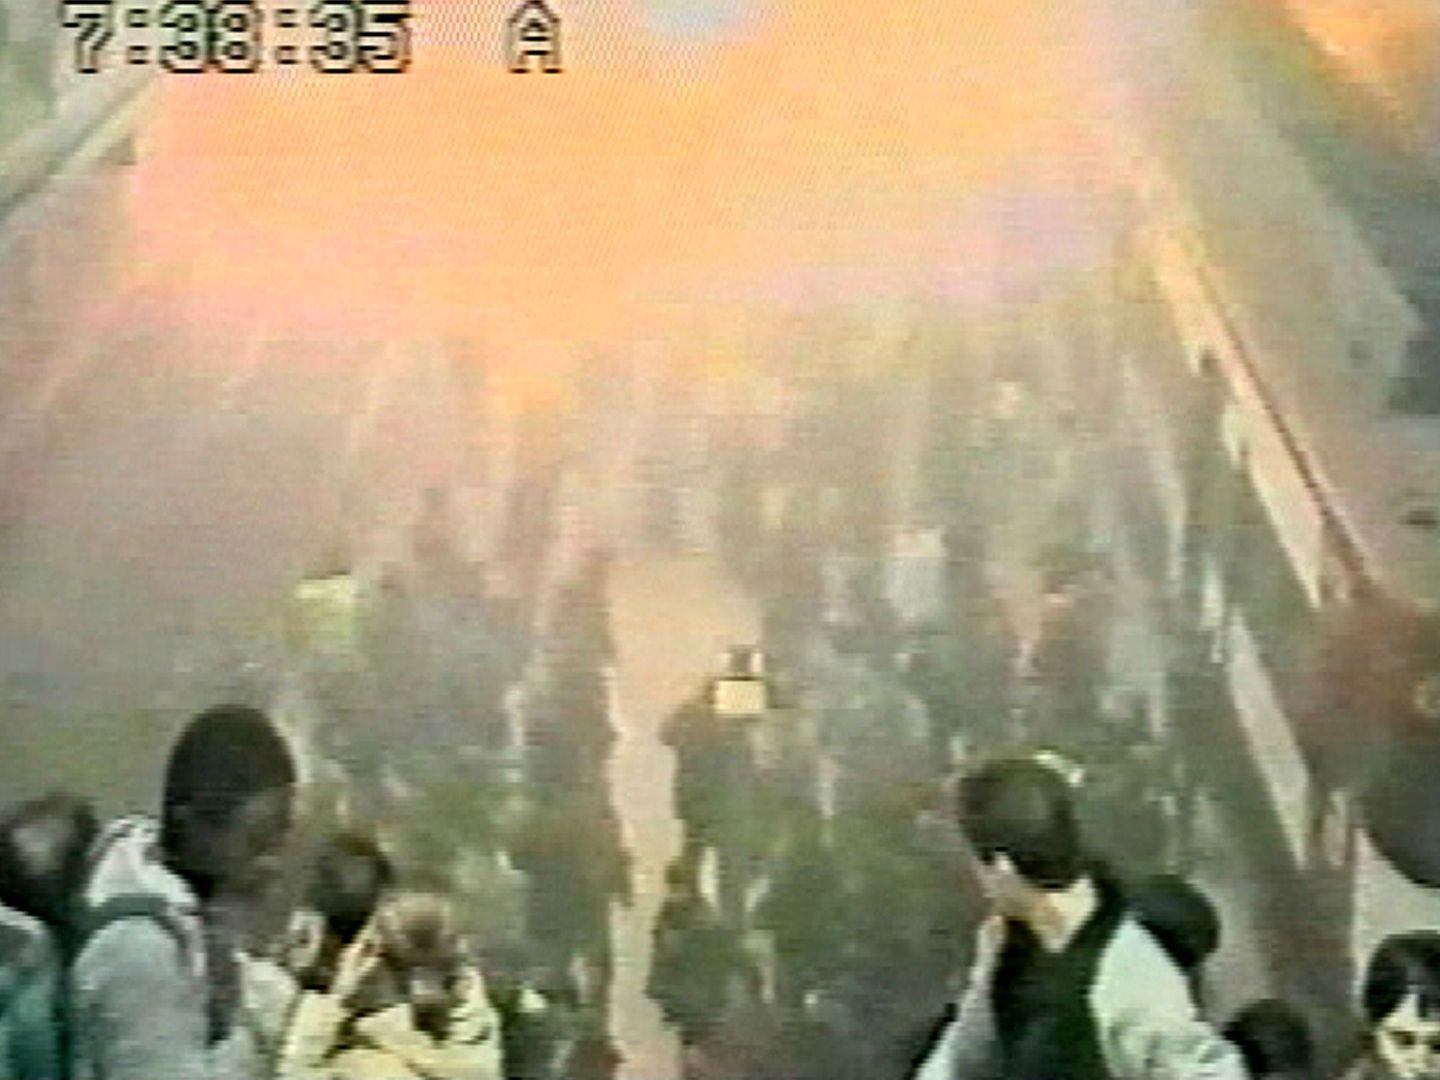 Imagen tomada por las cámaras de seguridad del momento de la explosión en Atocha.